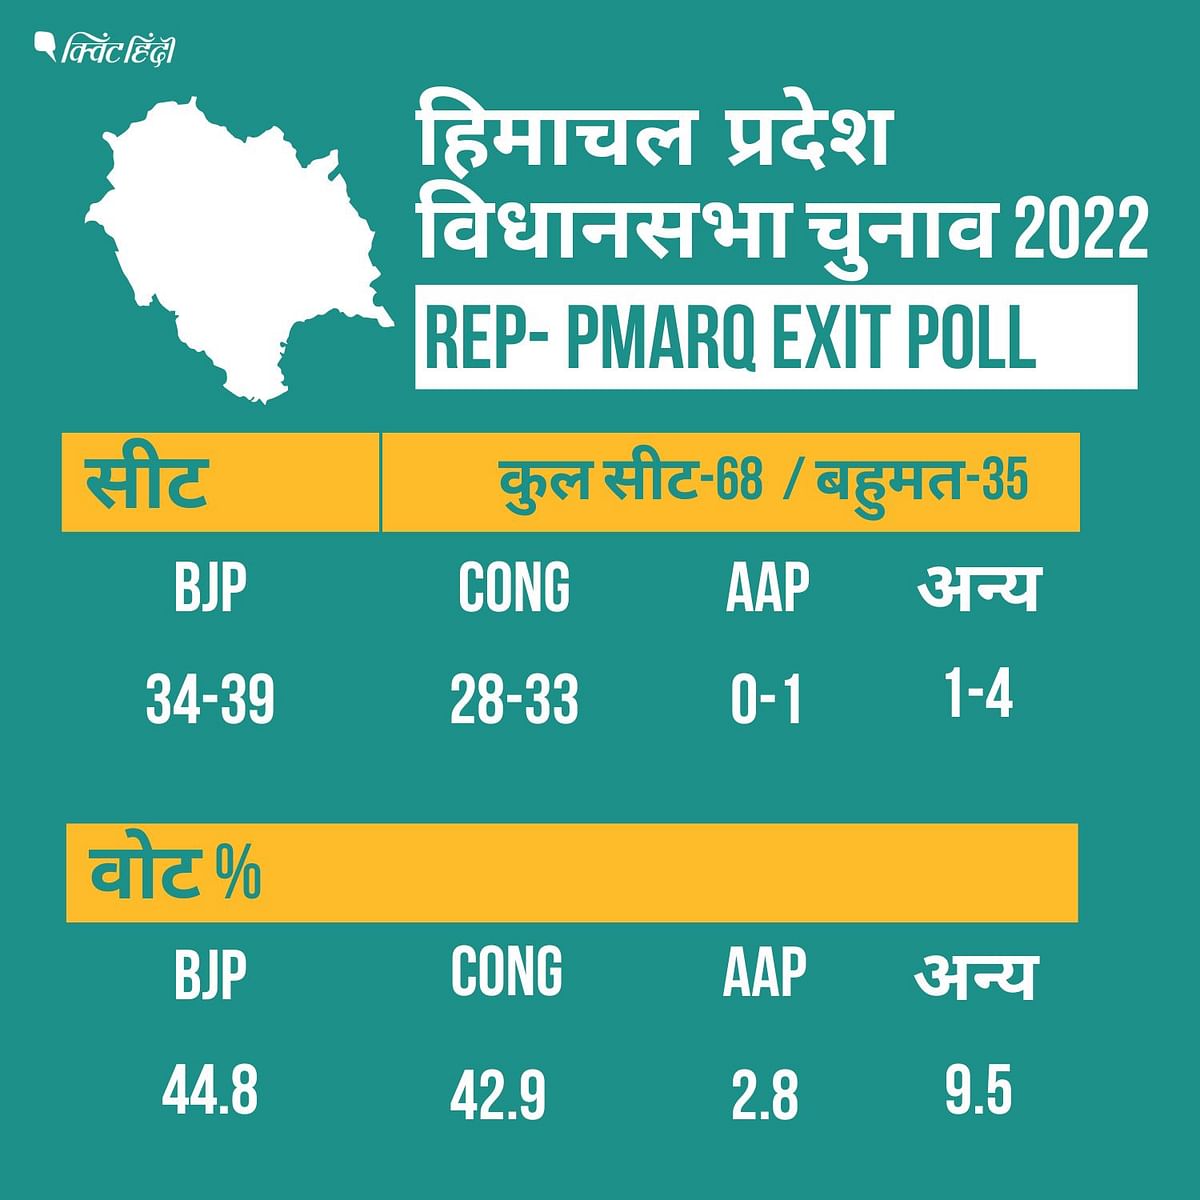 Himachal Pradesh Exit Poll Results। रिपब्लिक के मुताबिक, BJP को 44.8% वोट मिल सकते हैं, जो 2017 में 48.8% था.